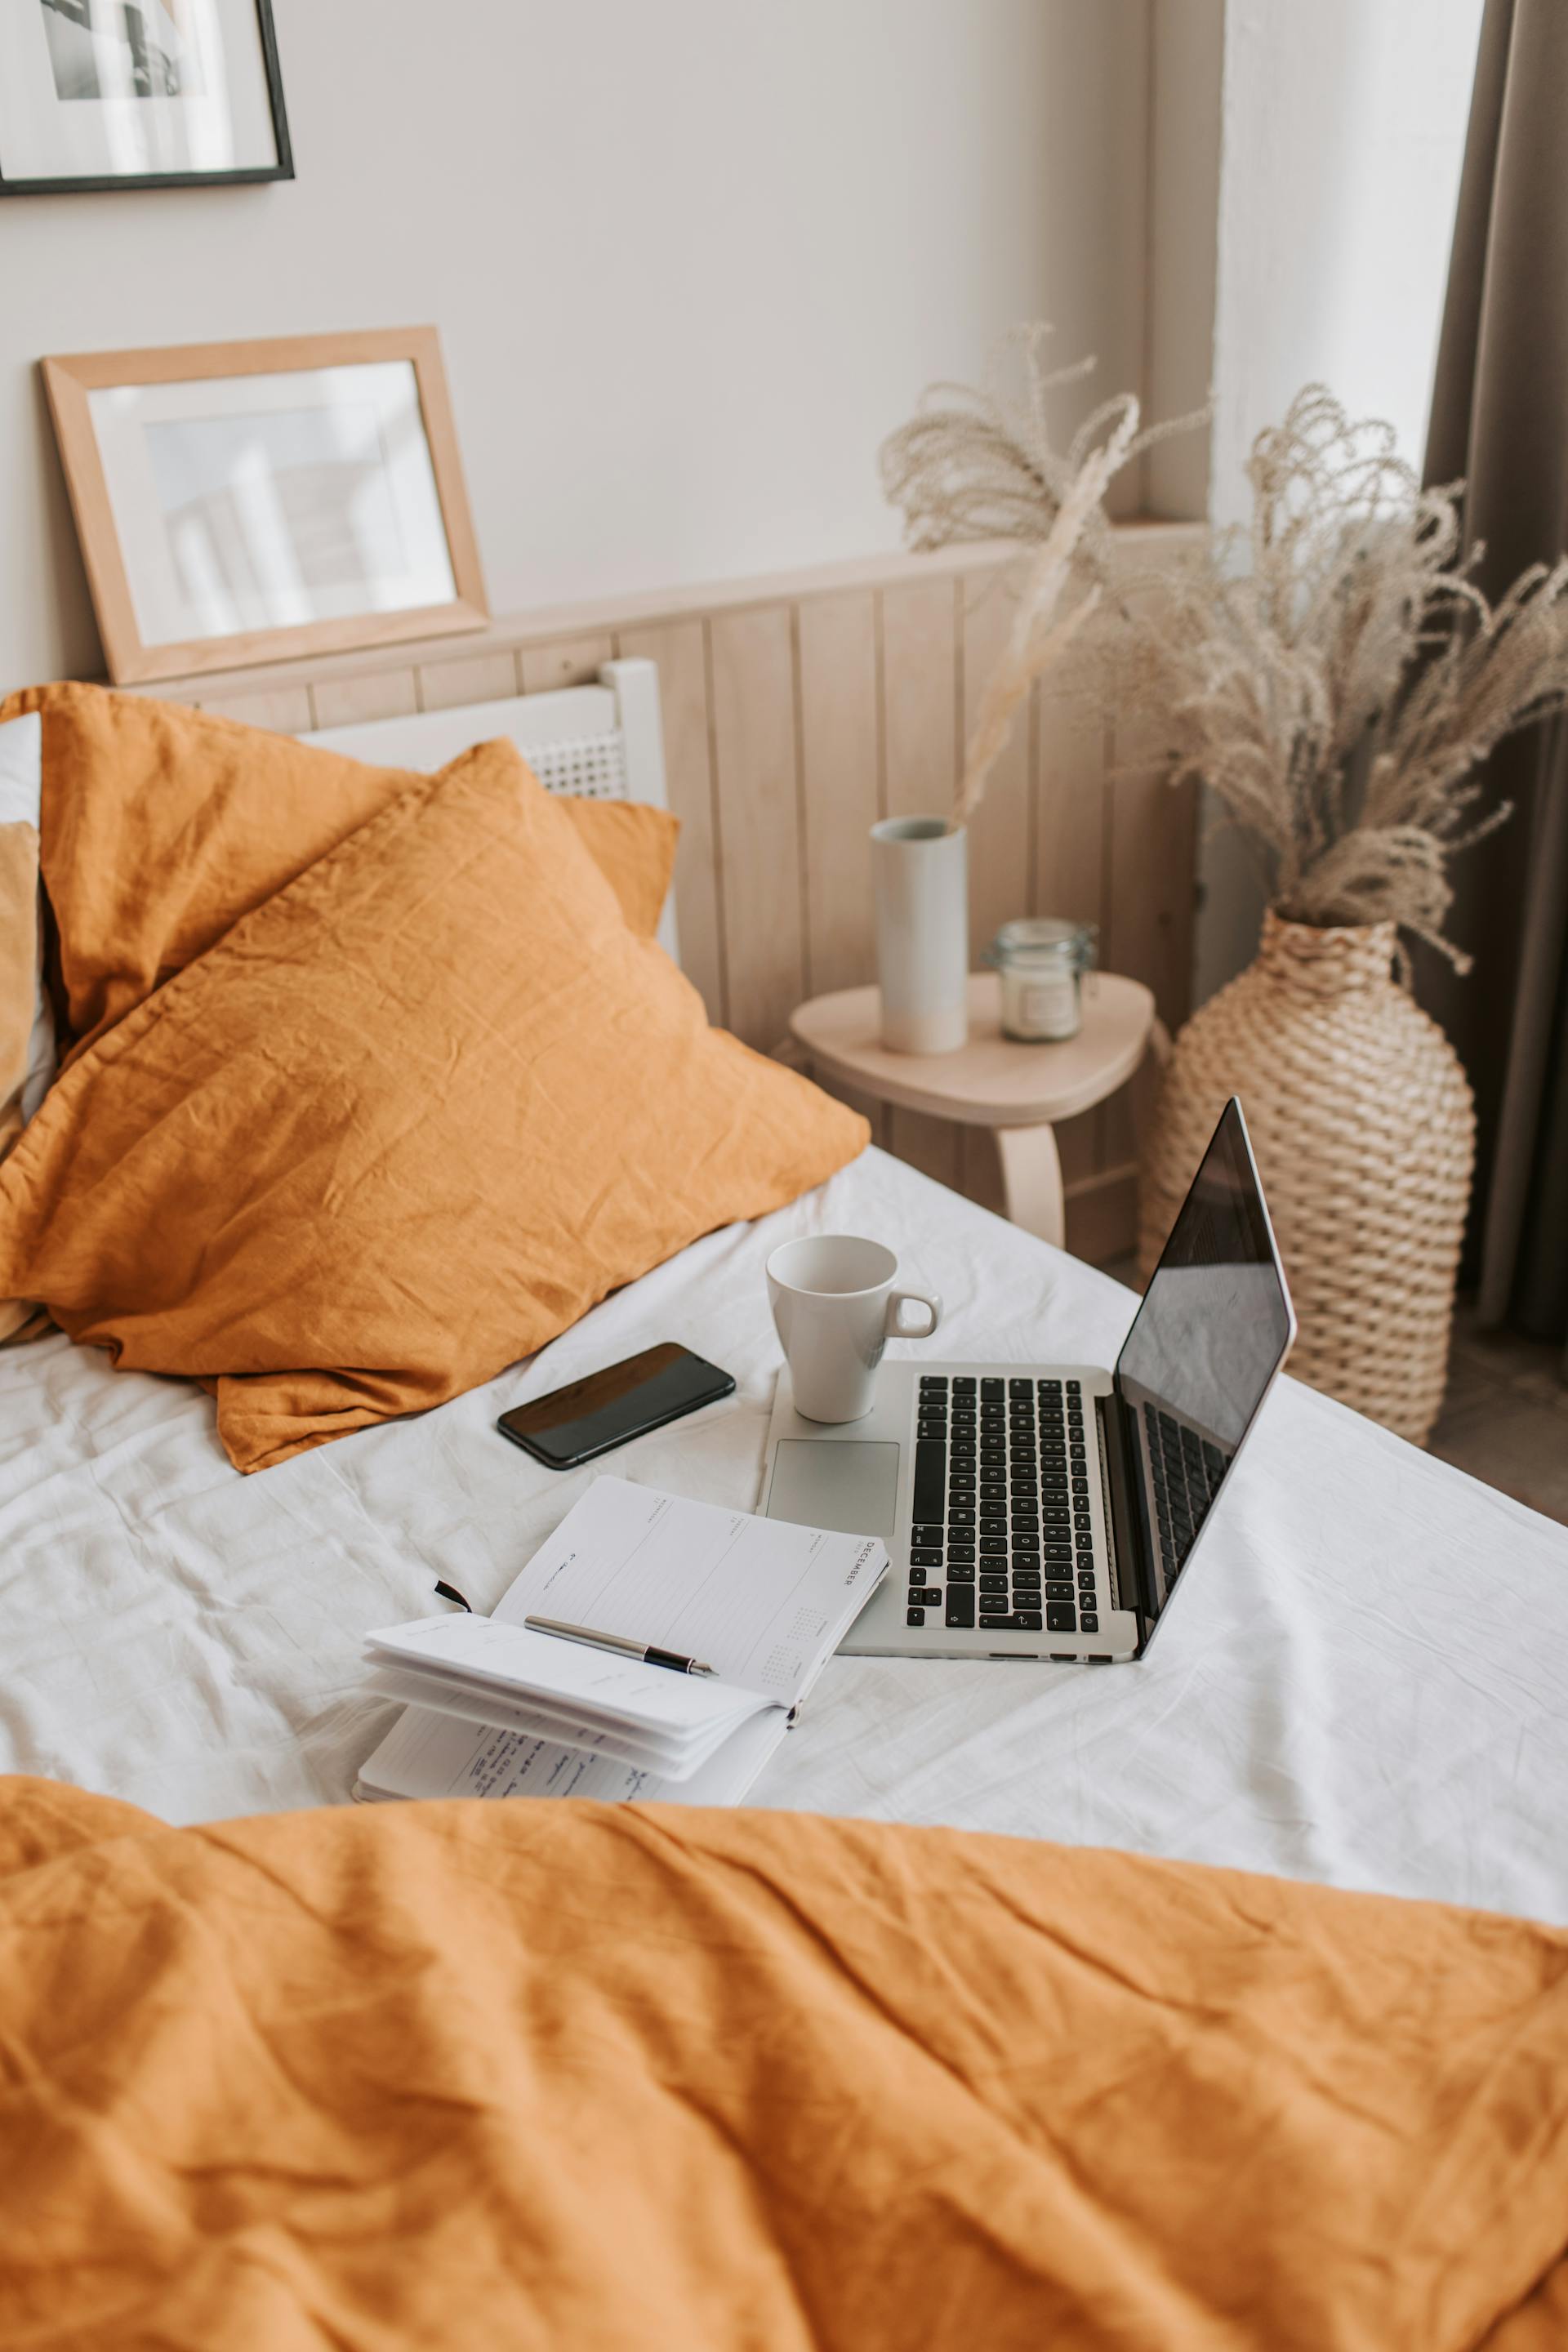 Une tasse de café et un ordinateur portable sur un lit | Source : Pexels